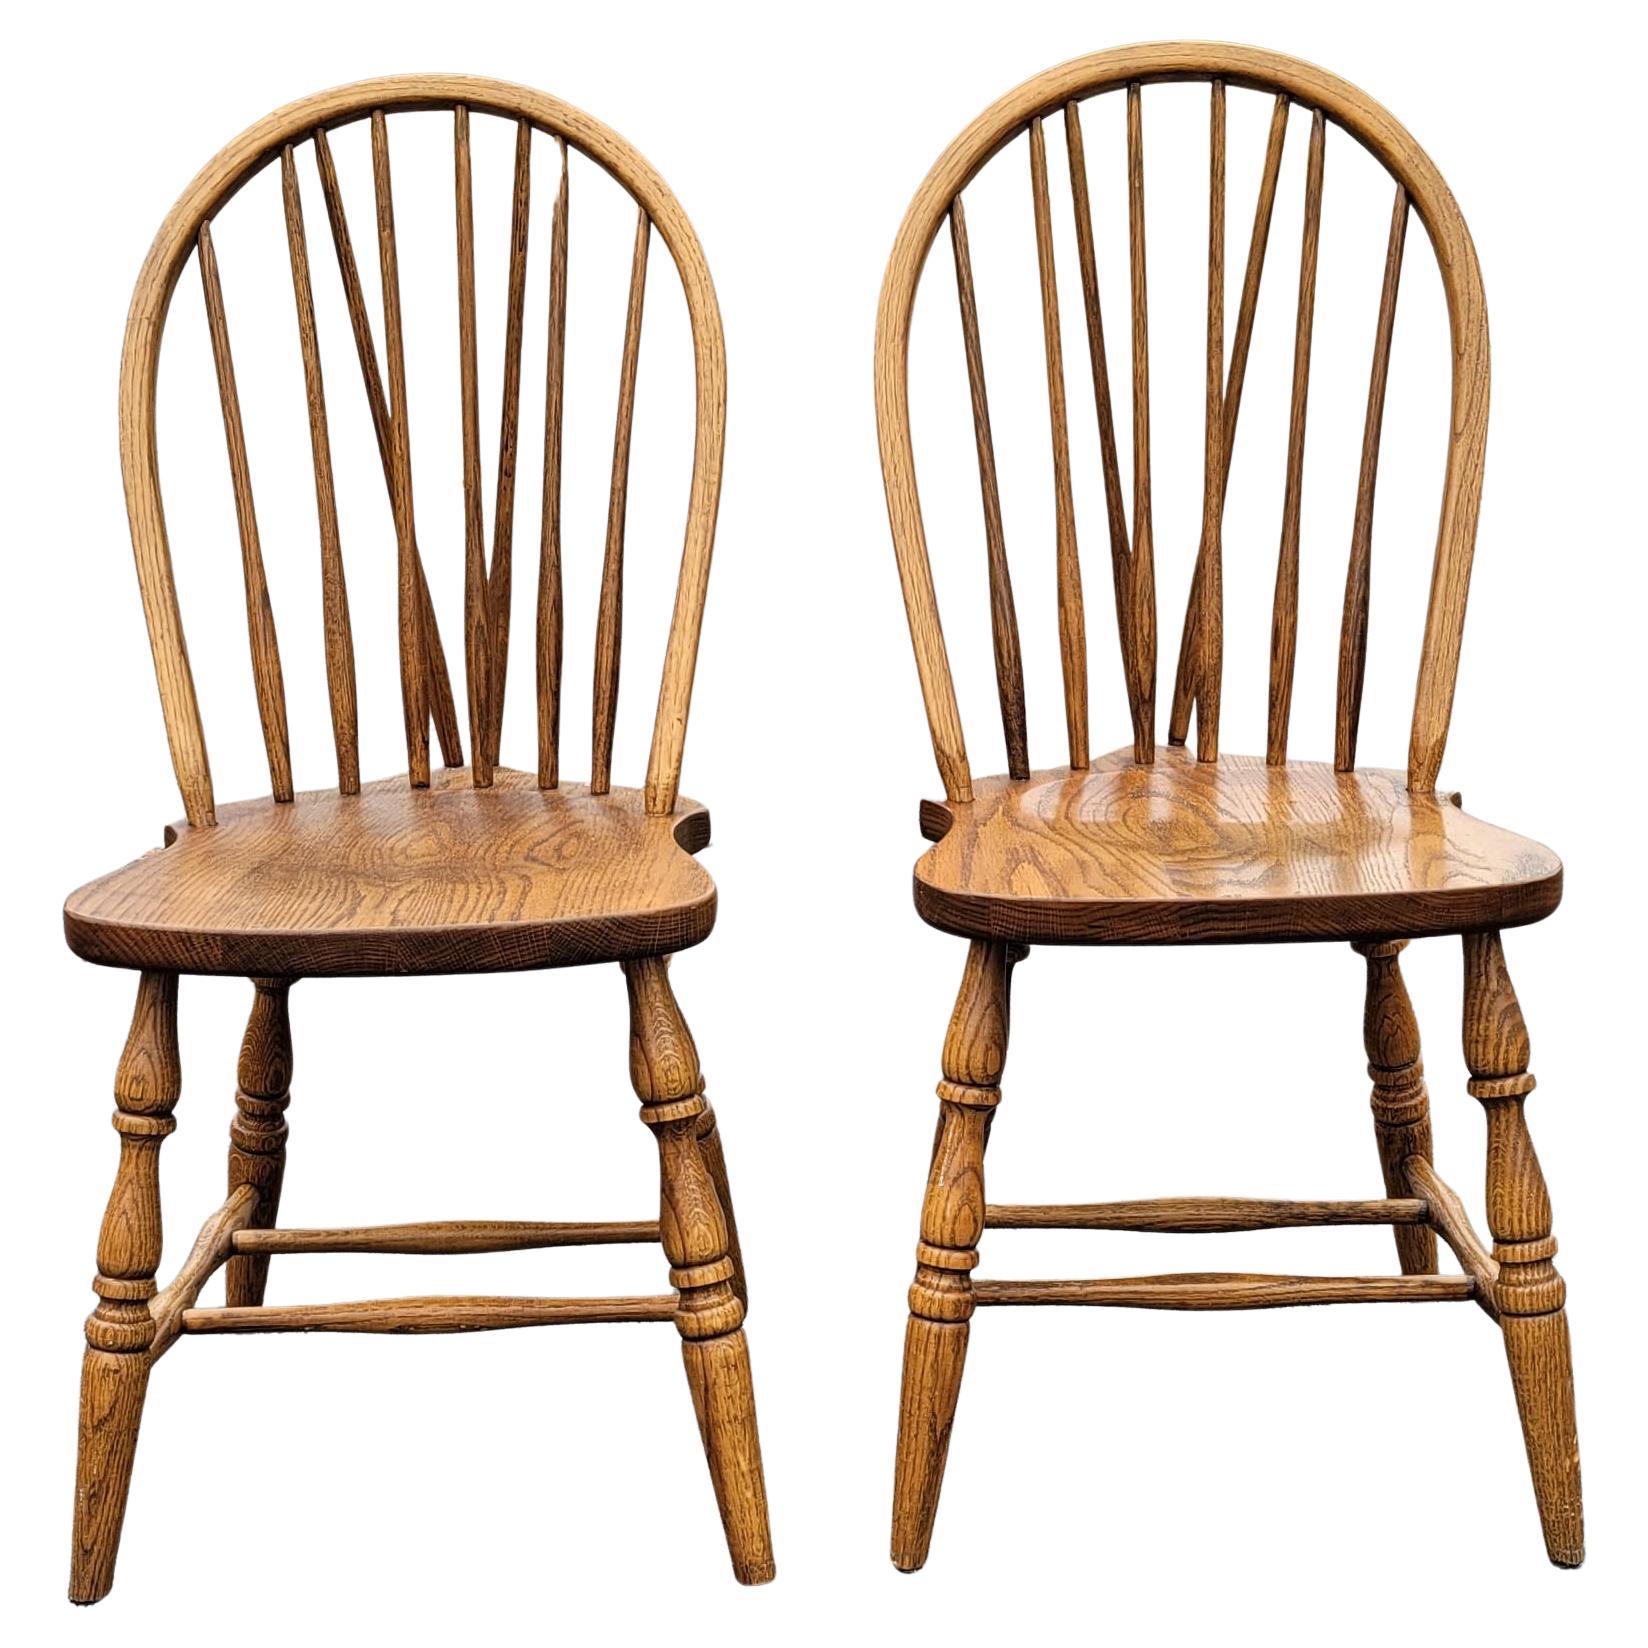 Une belle paire de chaises Windsor Arts & Crafts en chêne, en excellent état. Les chaises mesurent 17,5